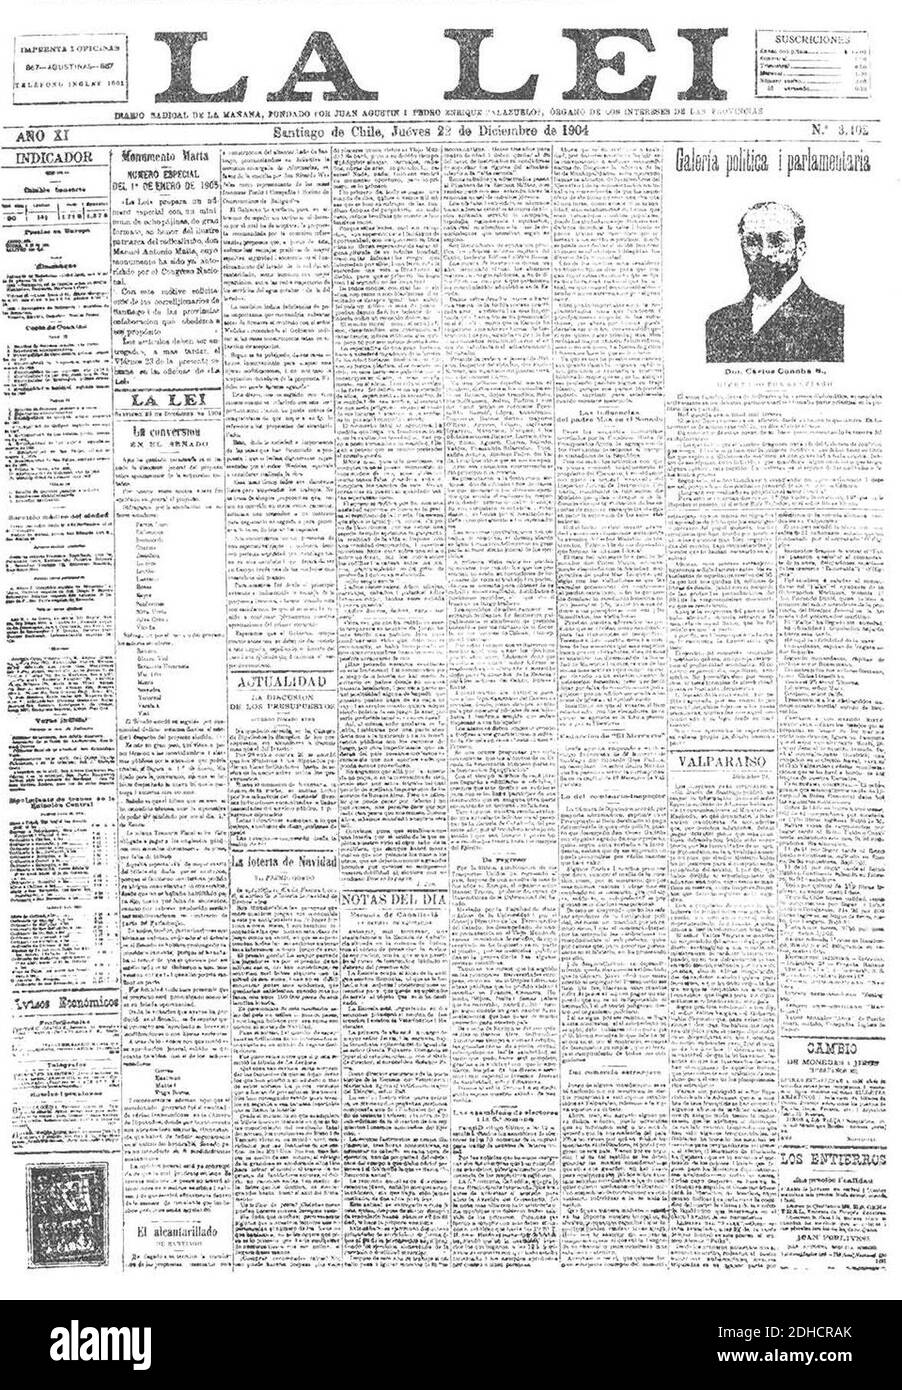 La Lei, 22 diciembre 1904. Stock Photo